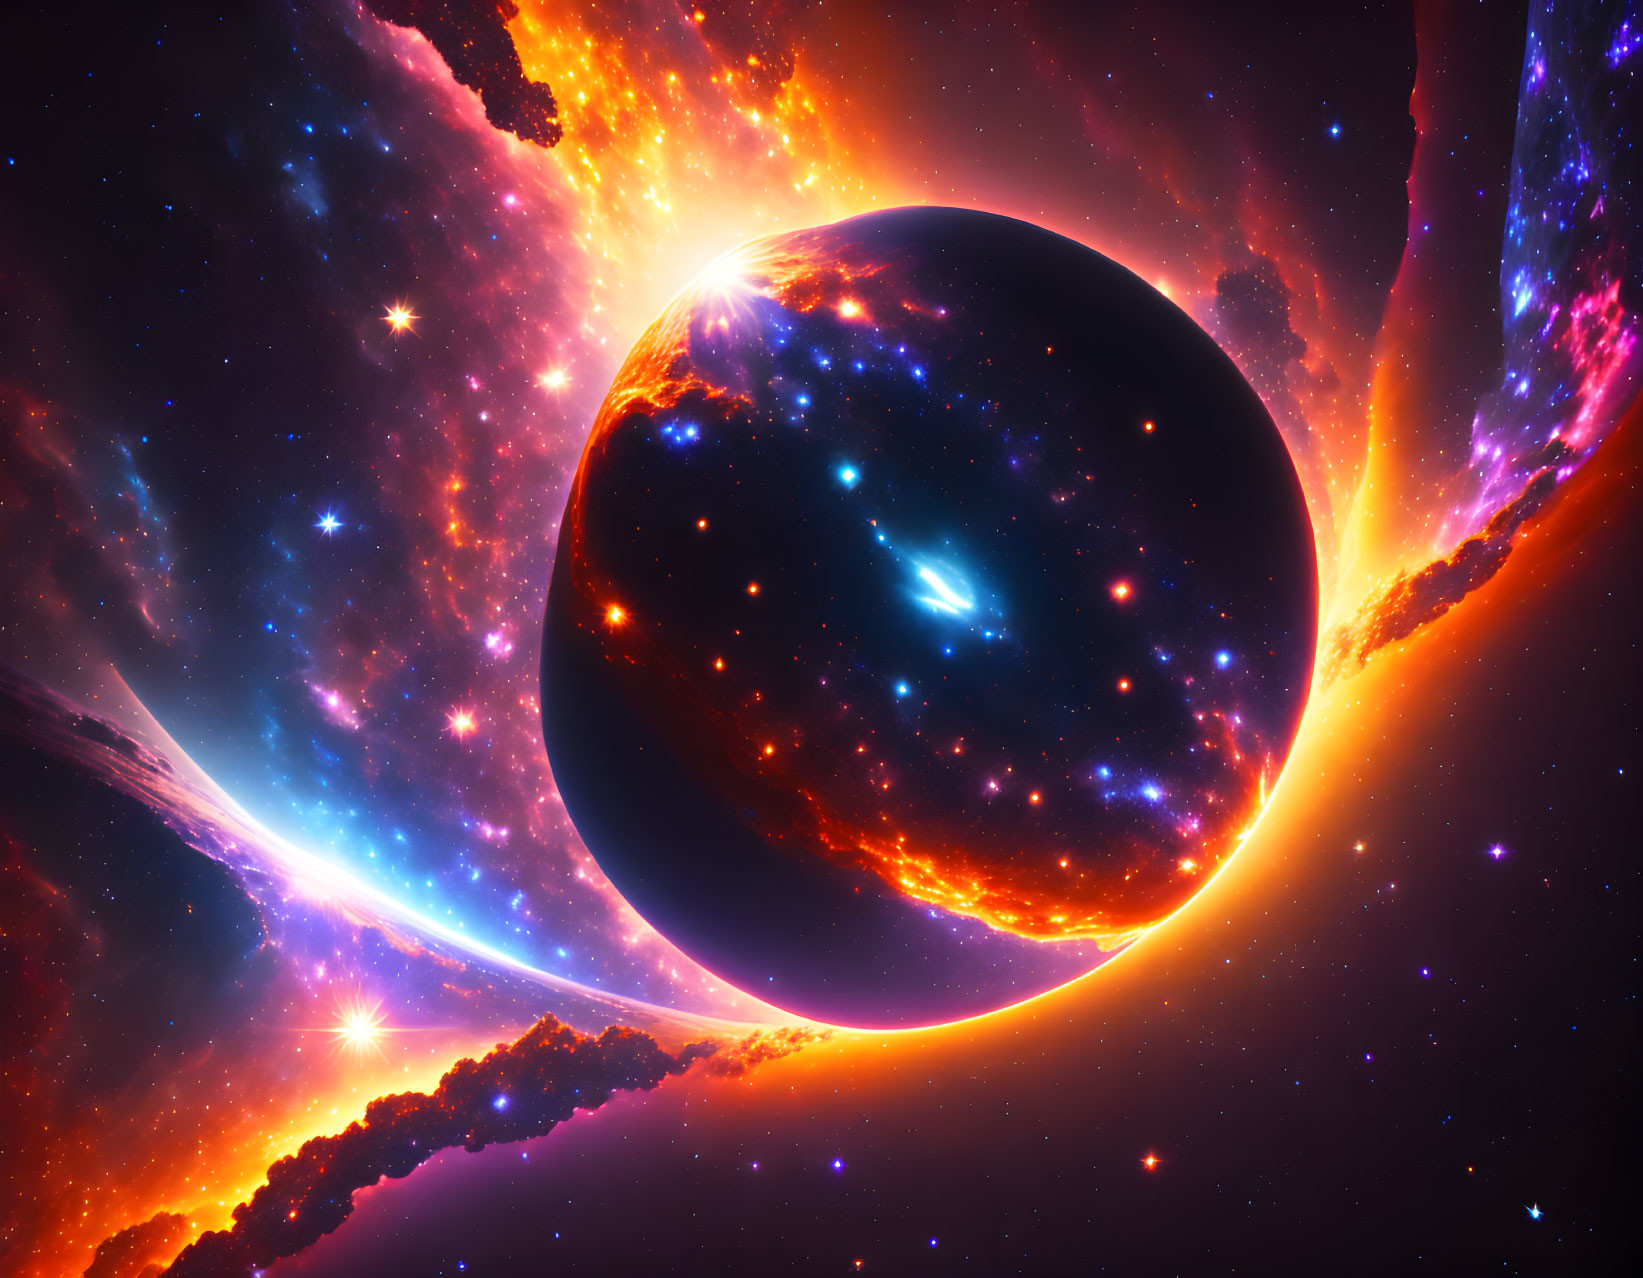 Dark planet eclipsing blazing star in cosmic scene